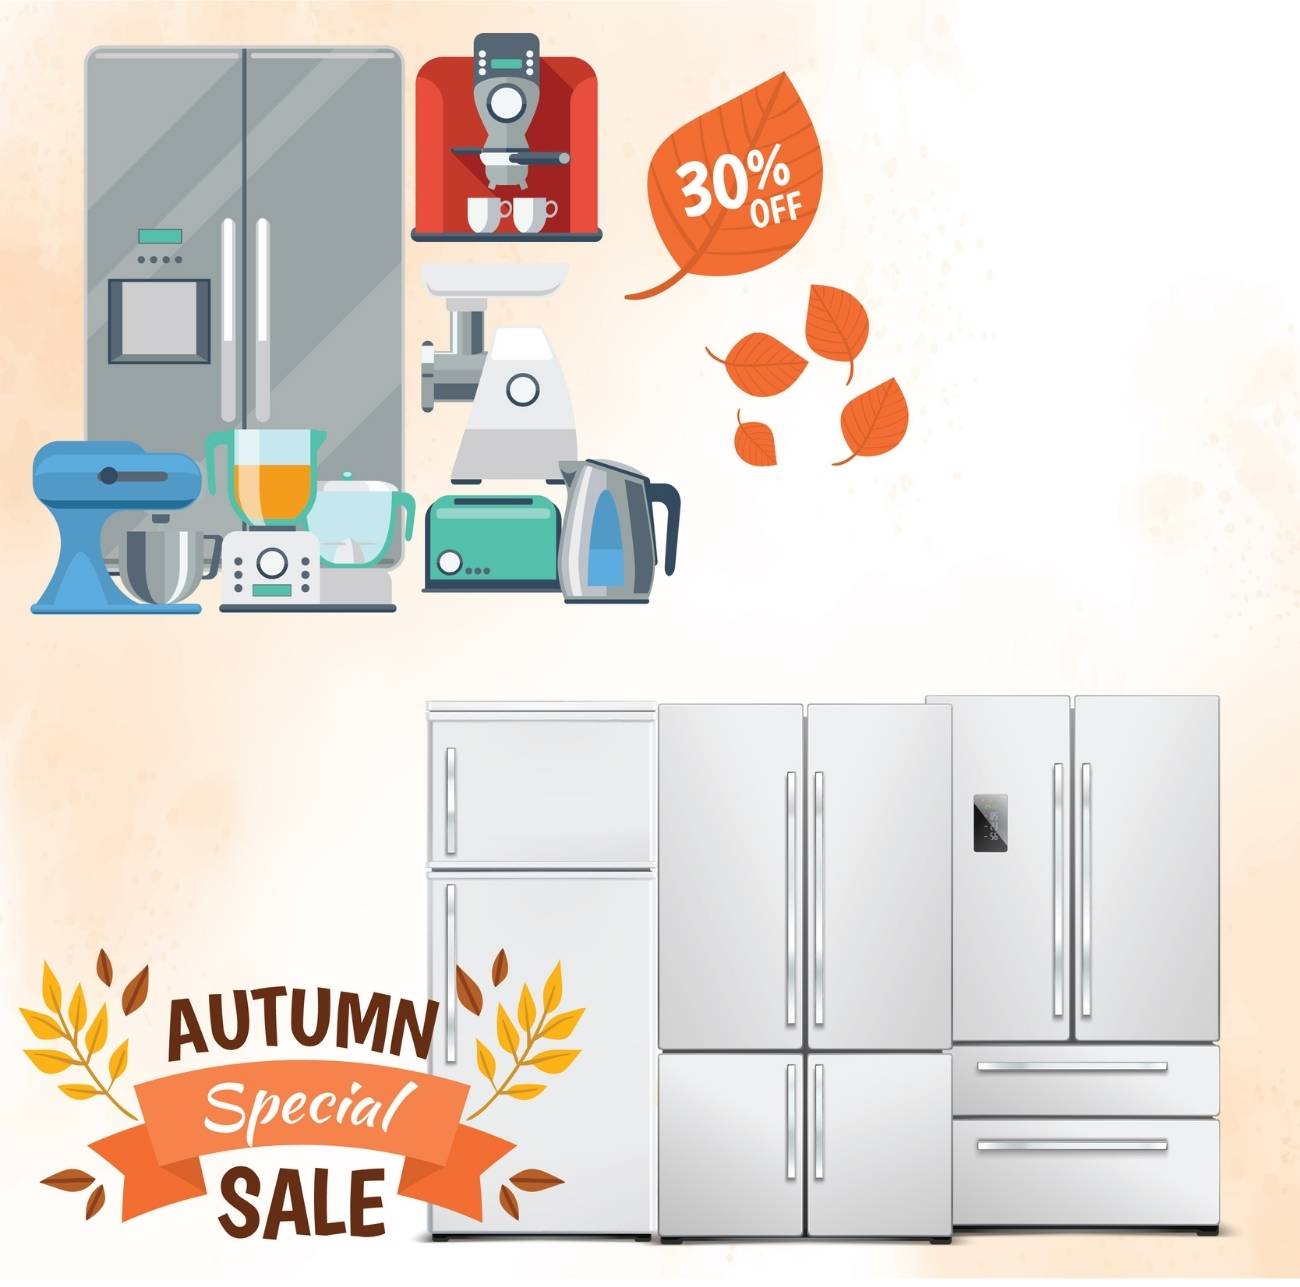 30% off autumn special sale appliances